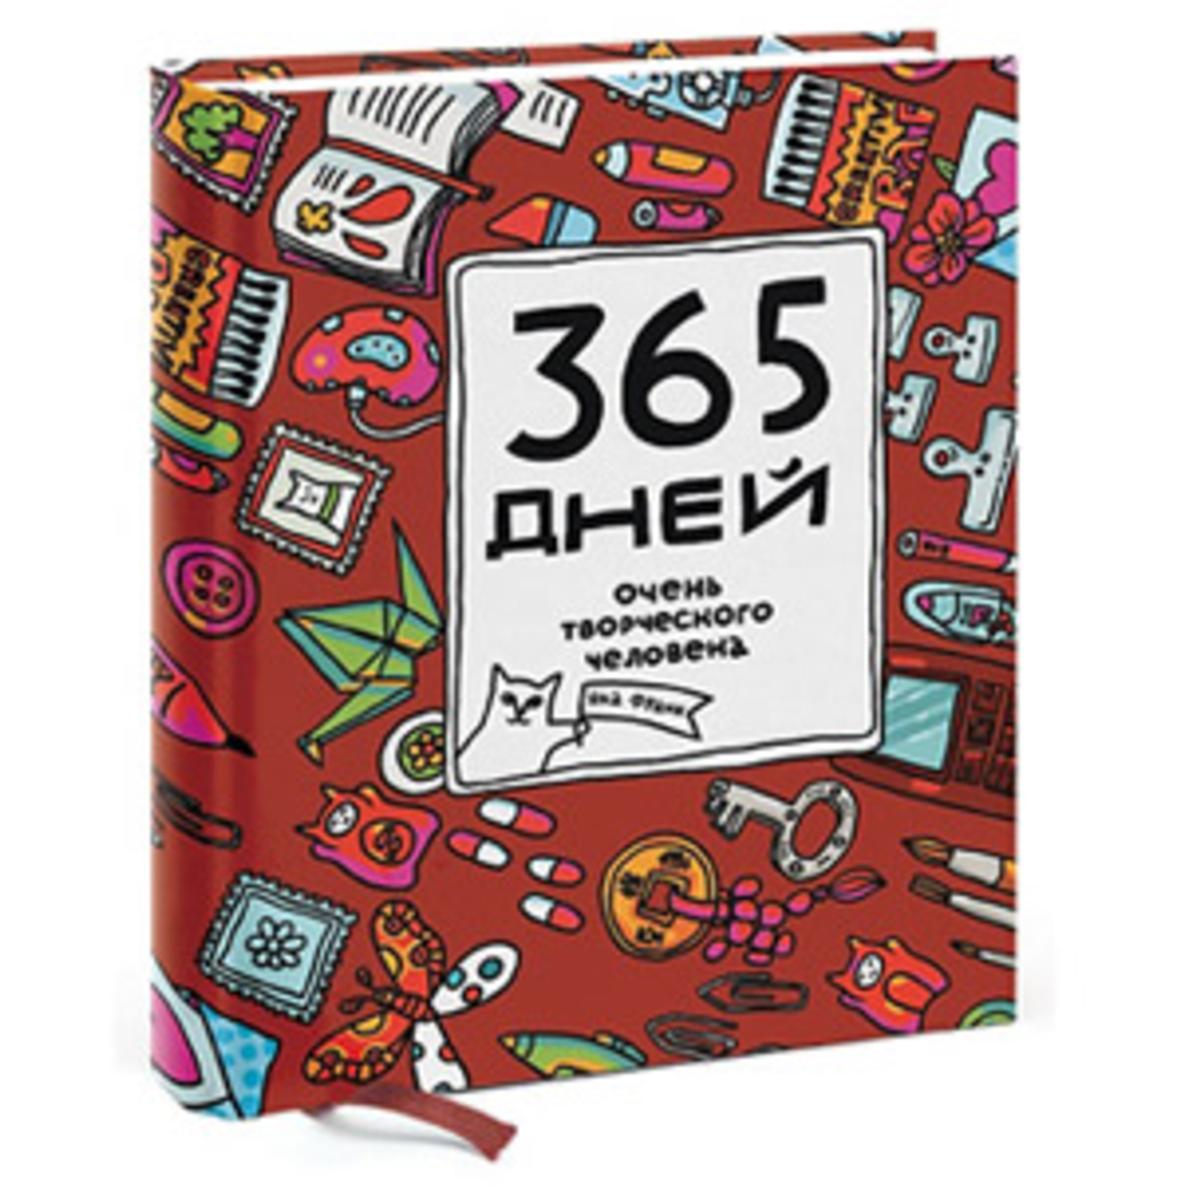 365 Дней очень творческого человека книга